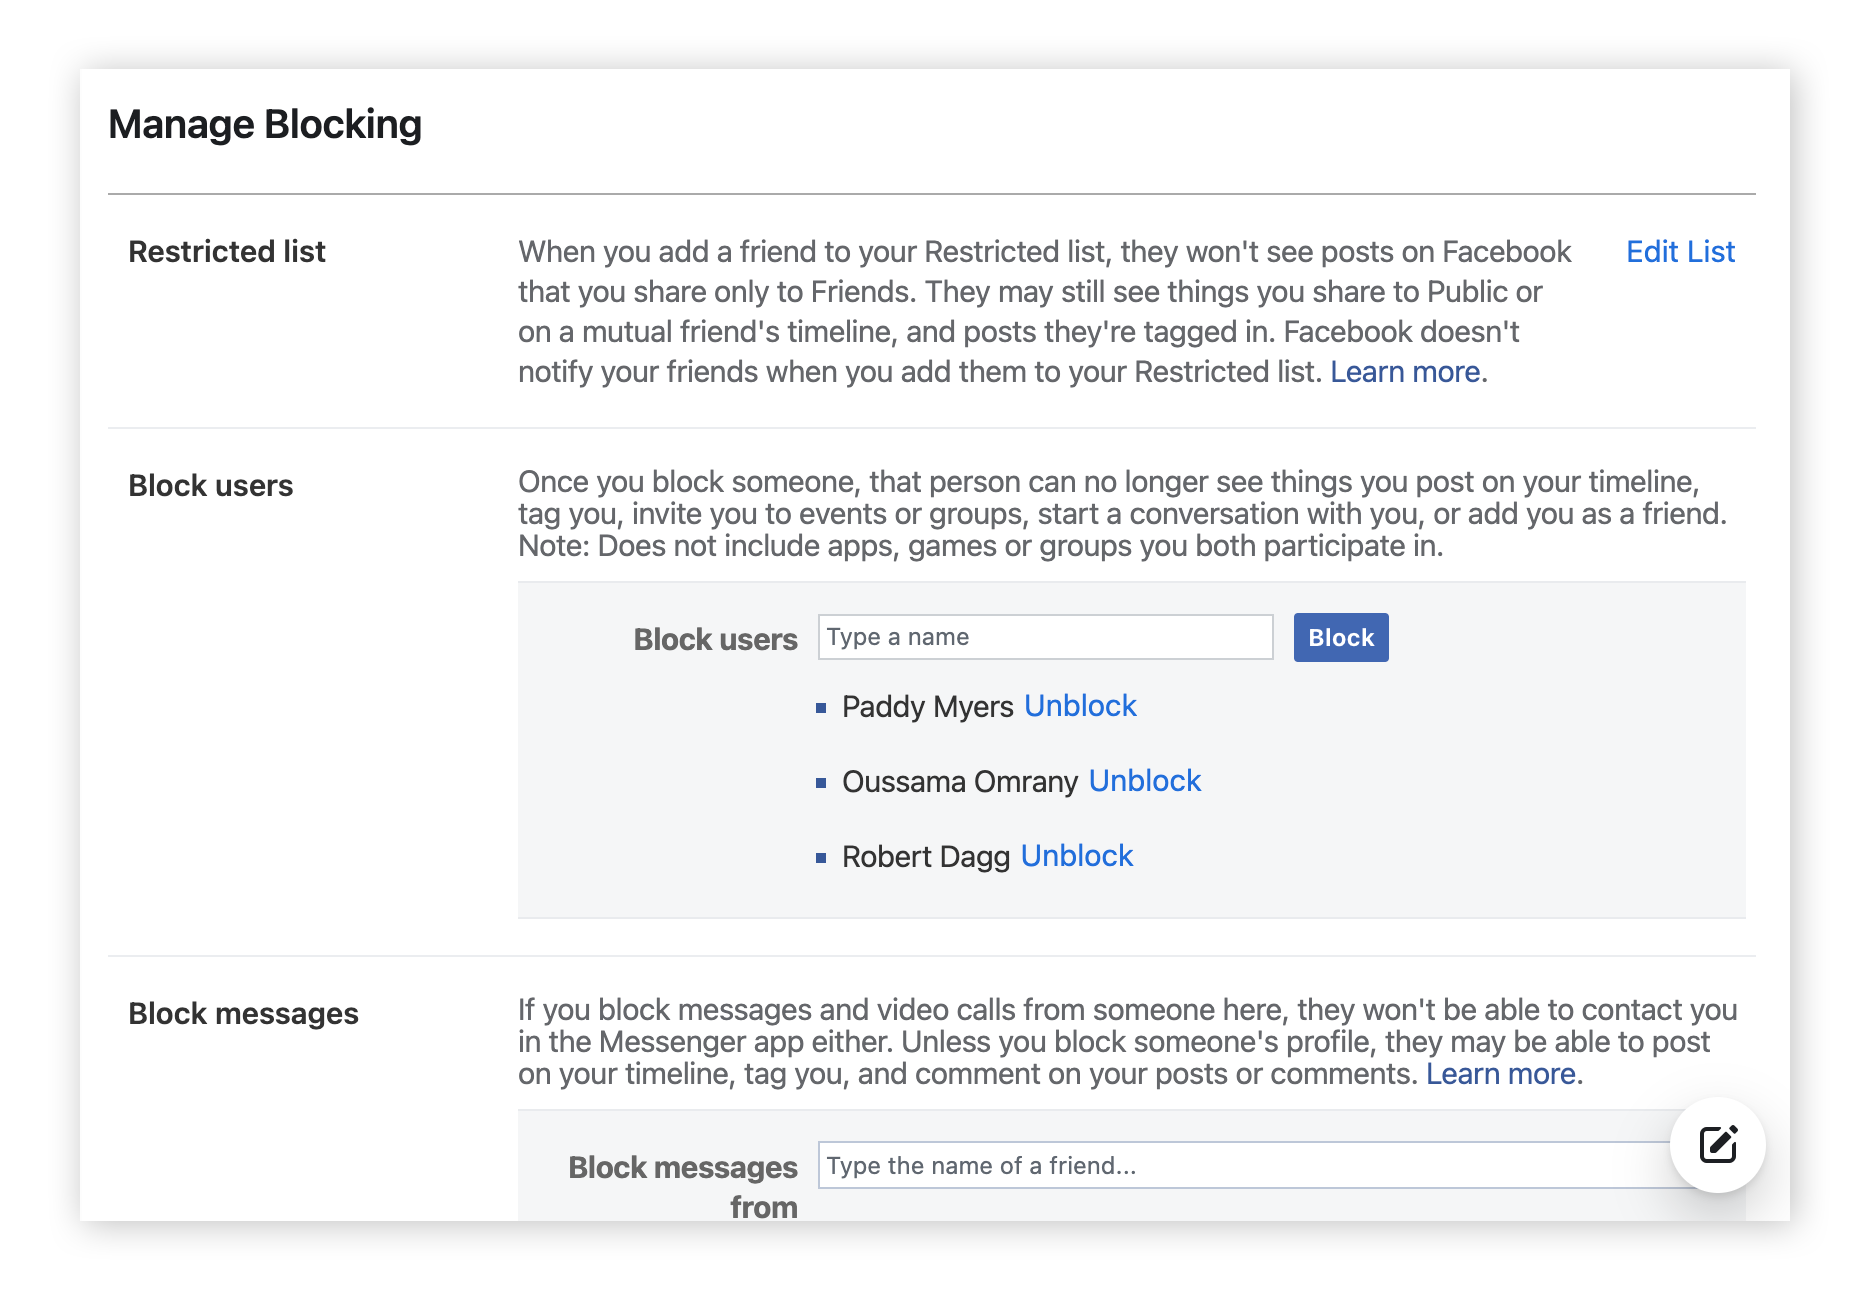 Seleccione qué tipo de bloqueo desea hacer en Facebook: un usuario, un mensaje o un evento.